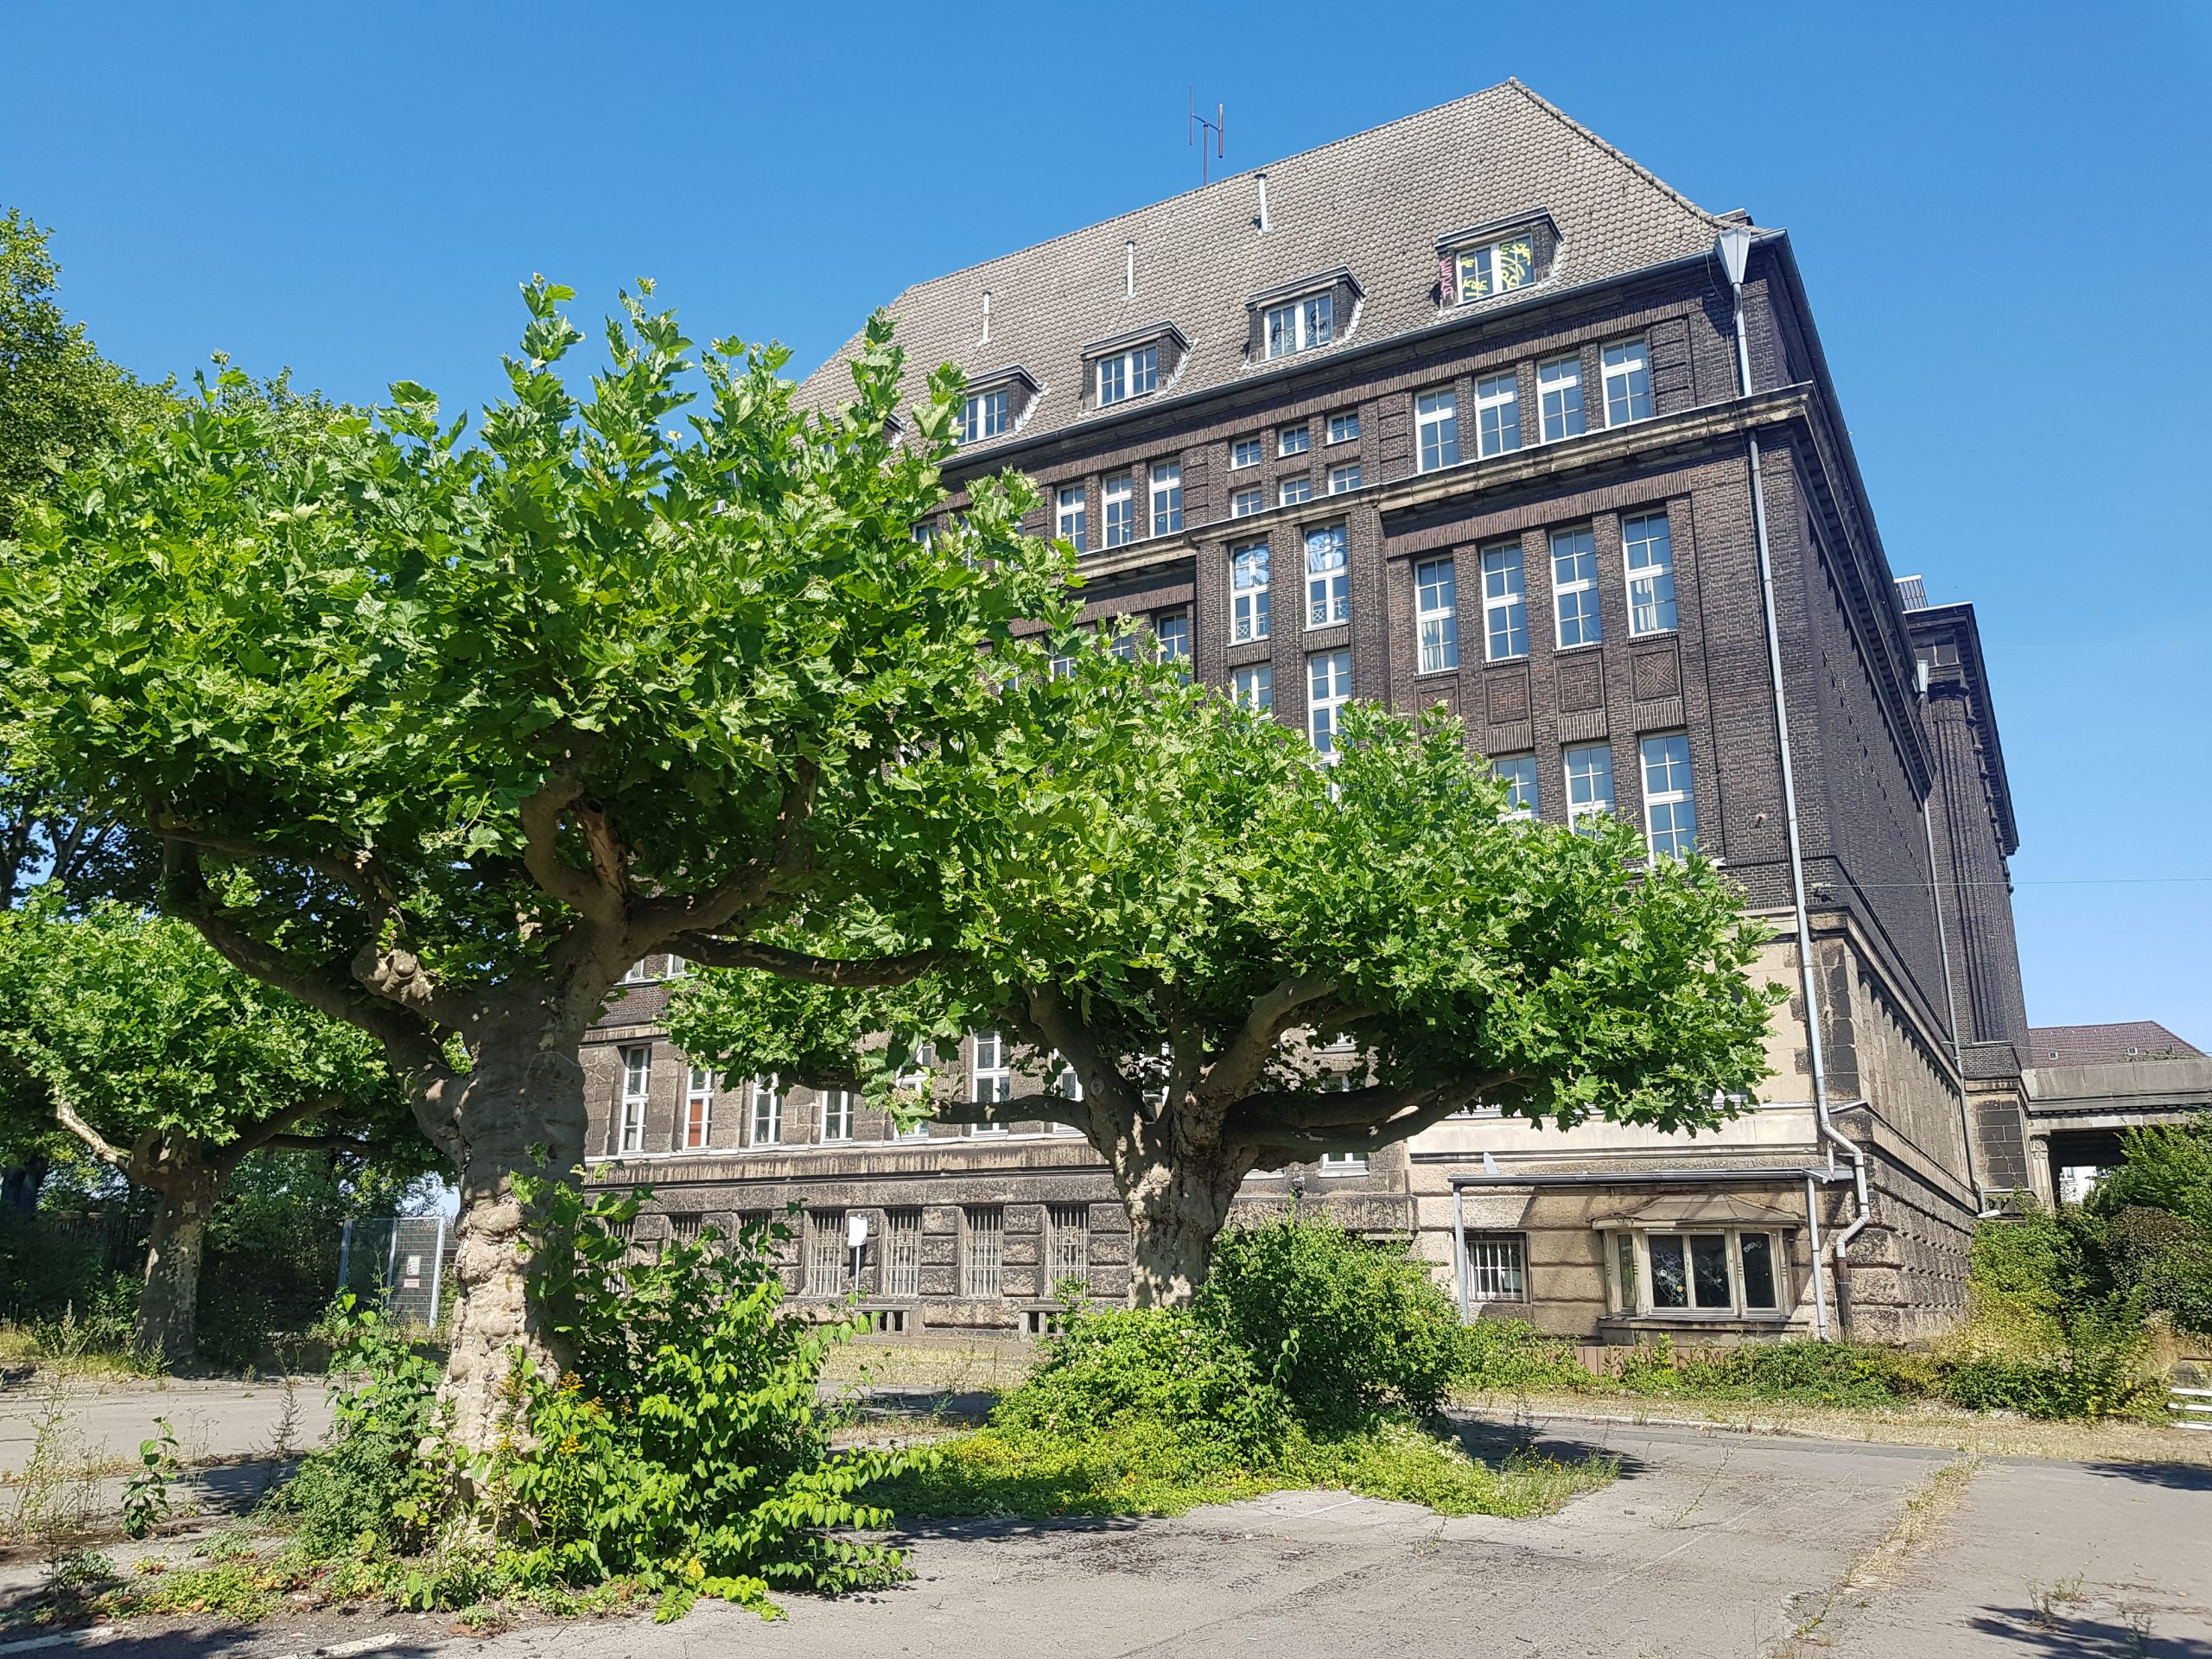 Das Foto zeigt die ehemalige Hoeschzentrale in Dortmund, ein Lost Place im Ruhrgebiet